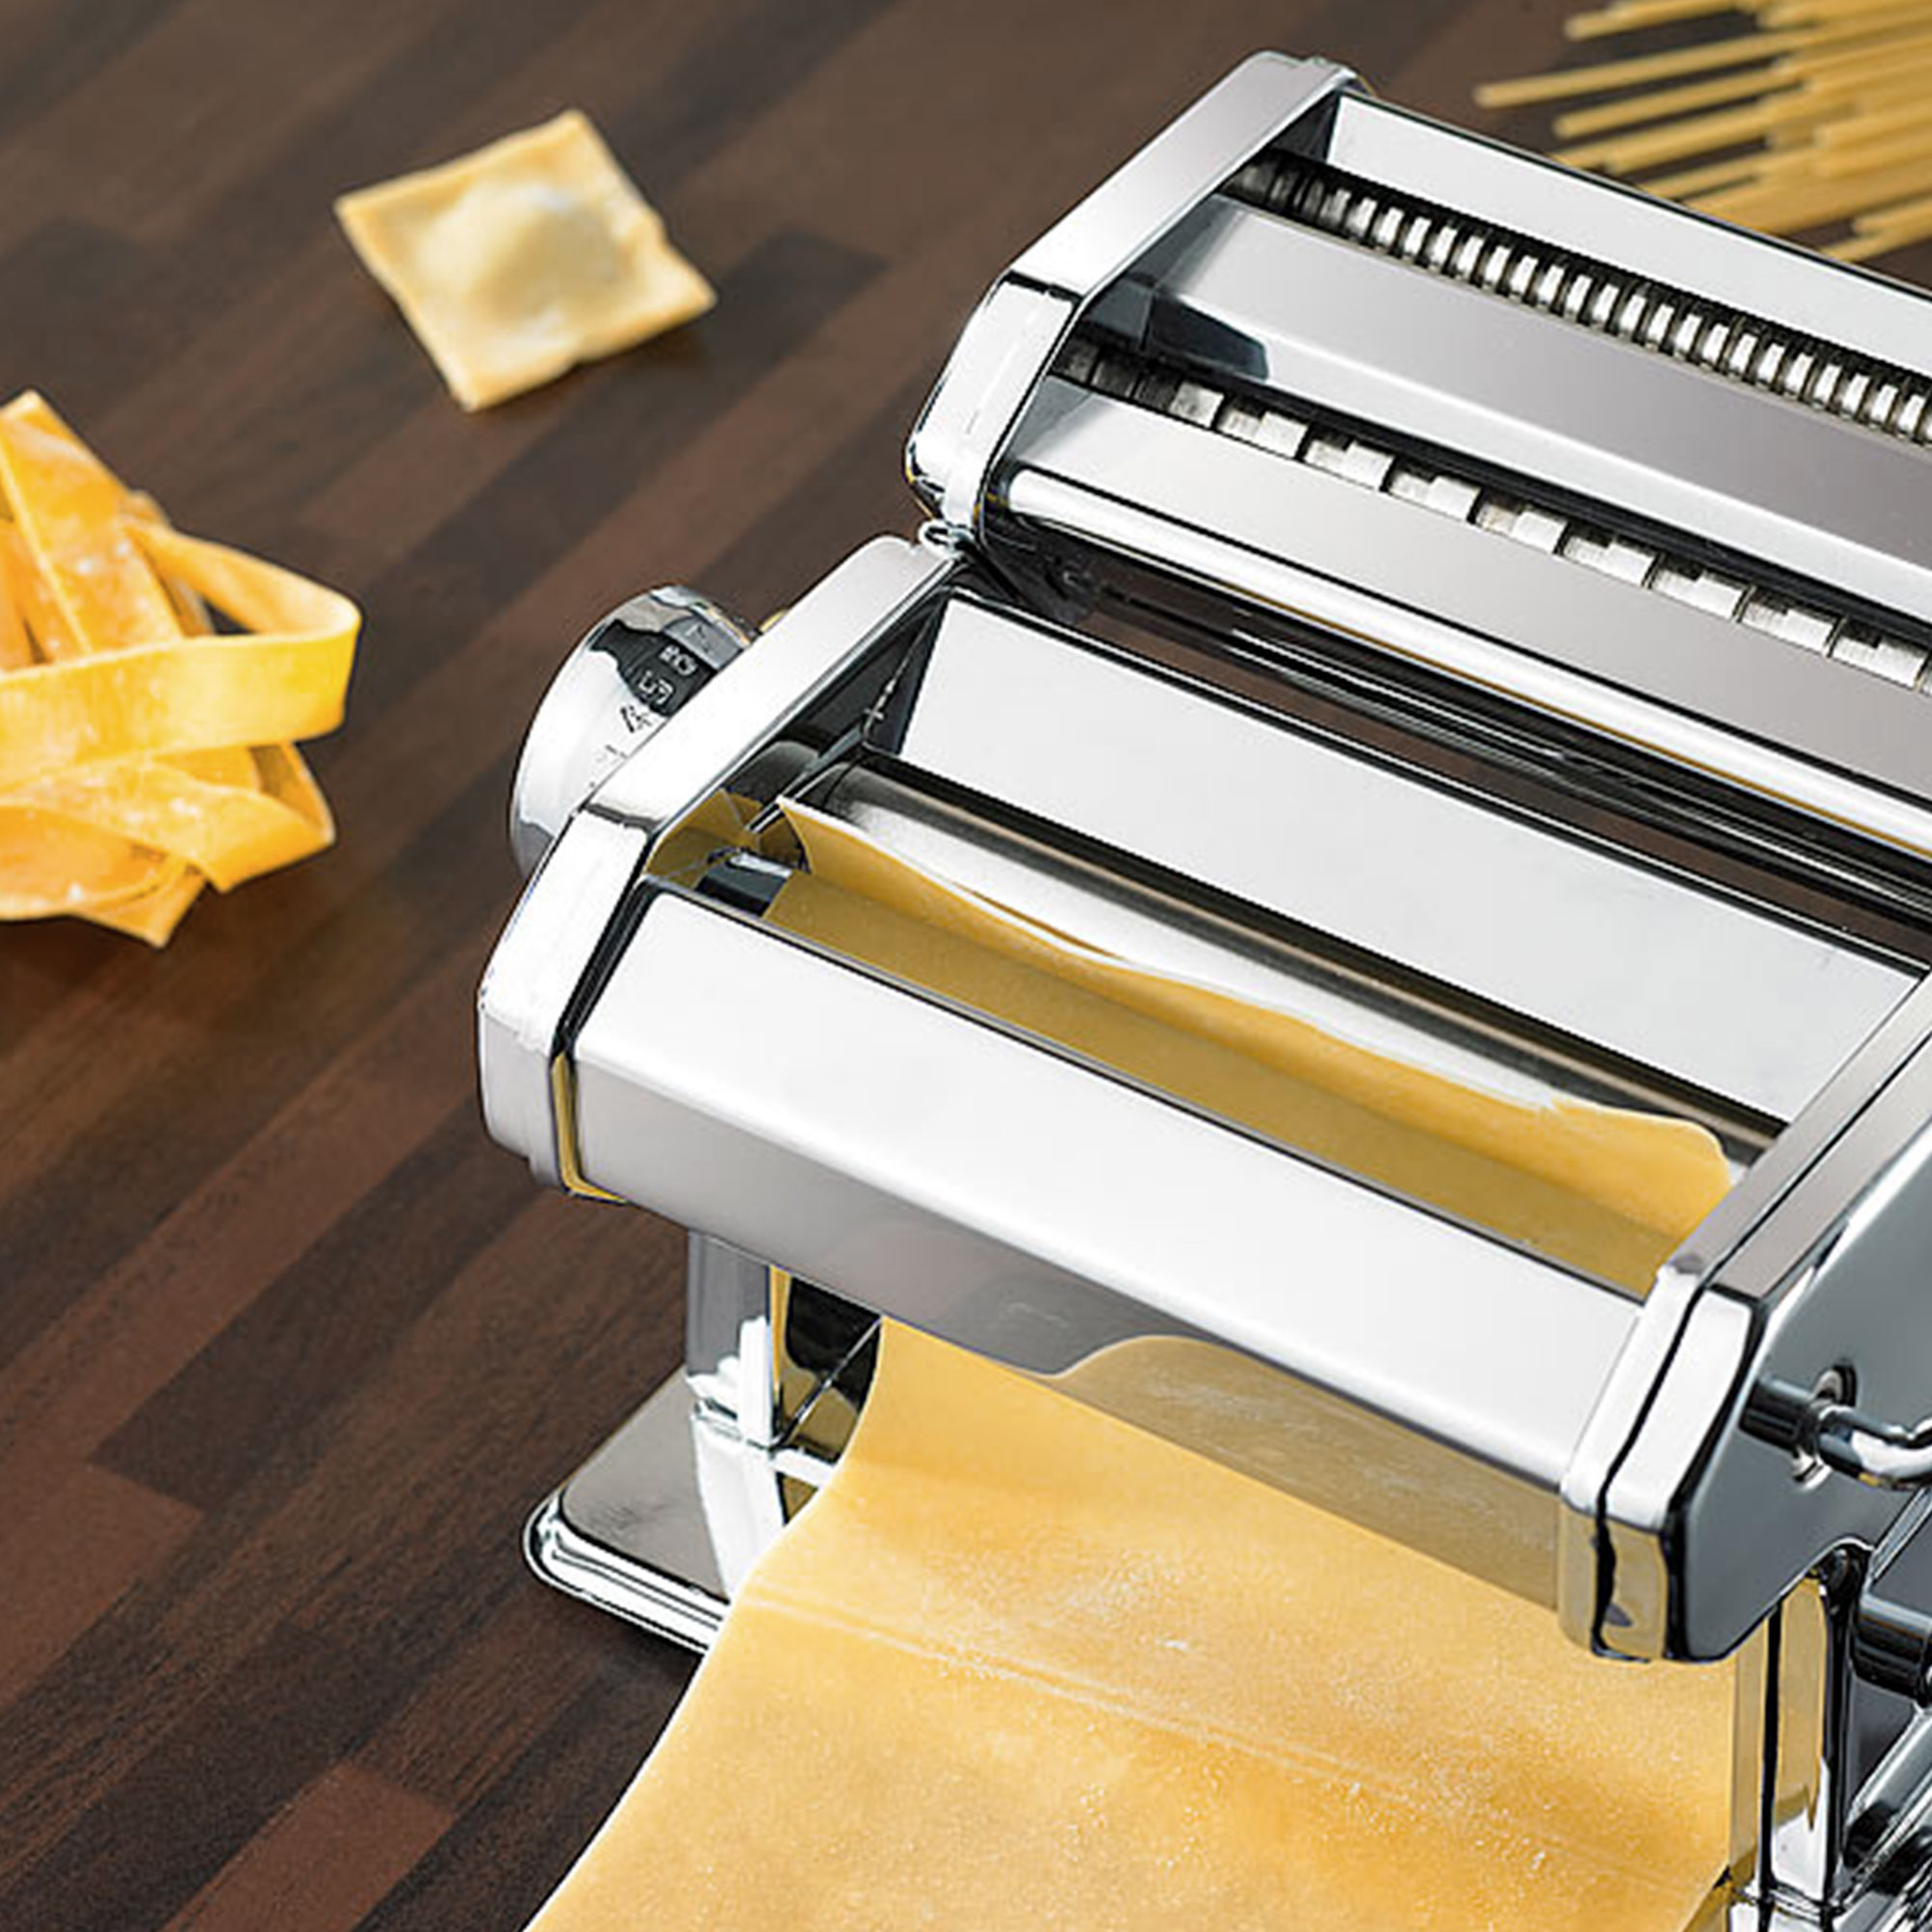 Nudelmaschine - Pasta selber machen 3813 - 4